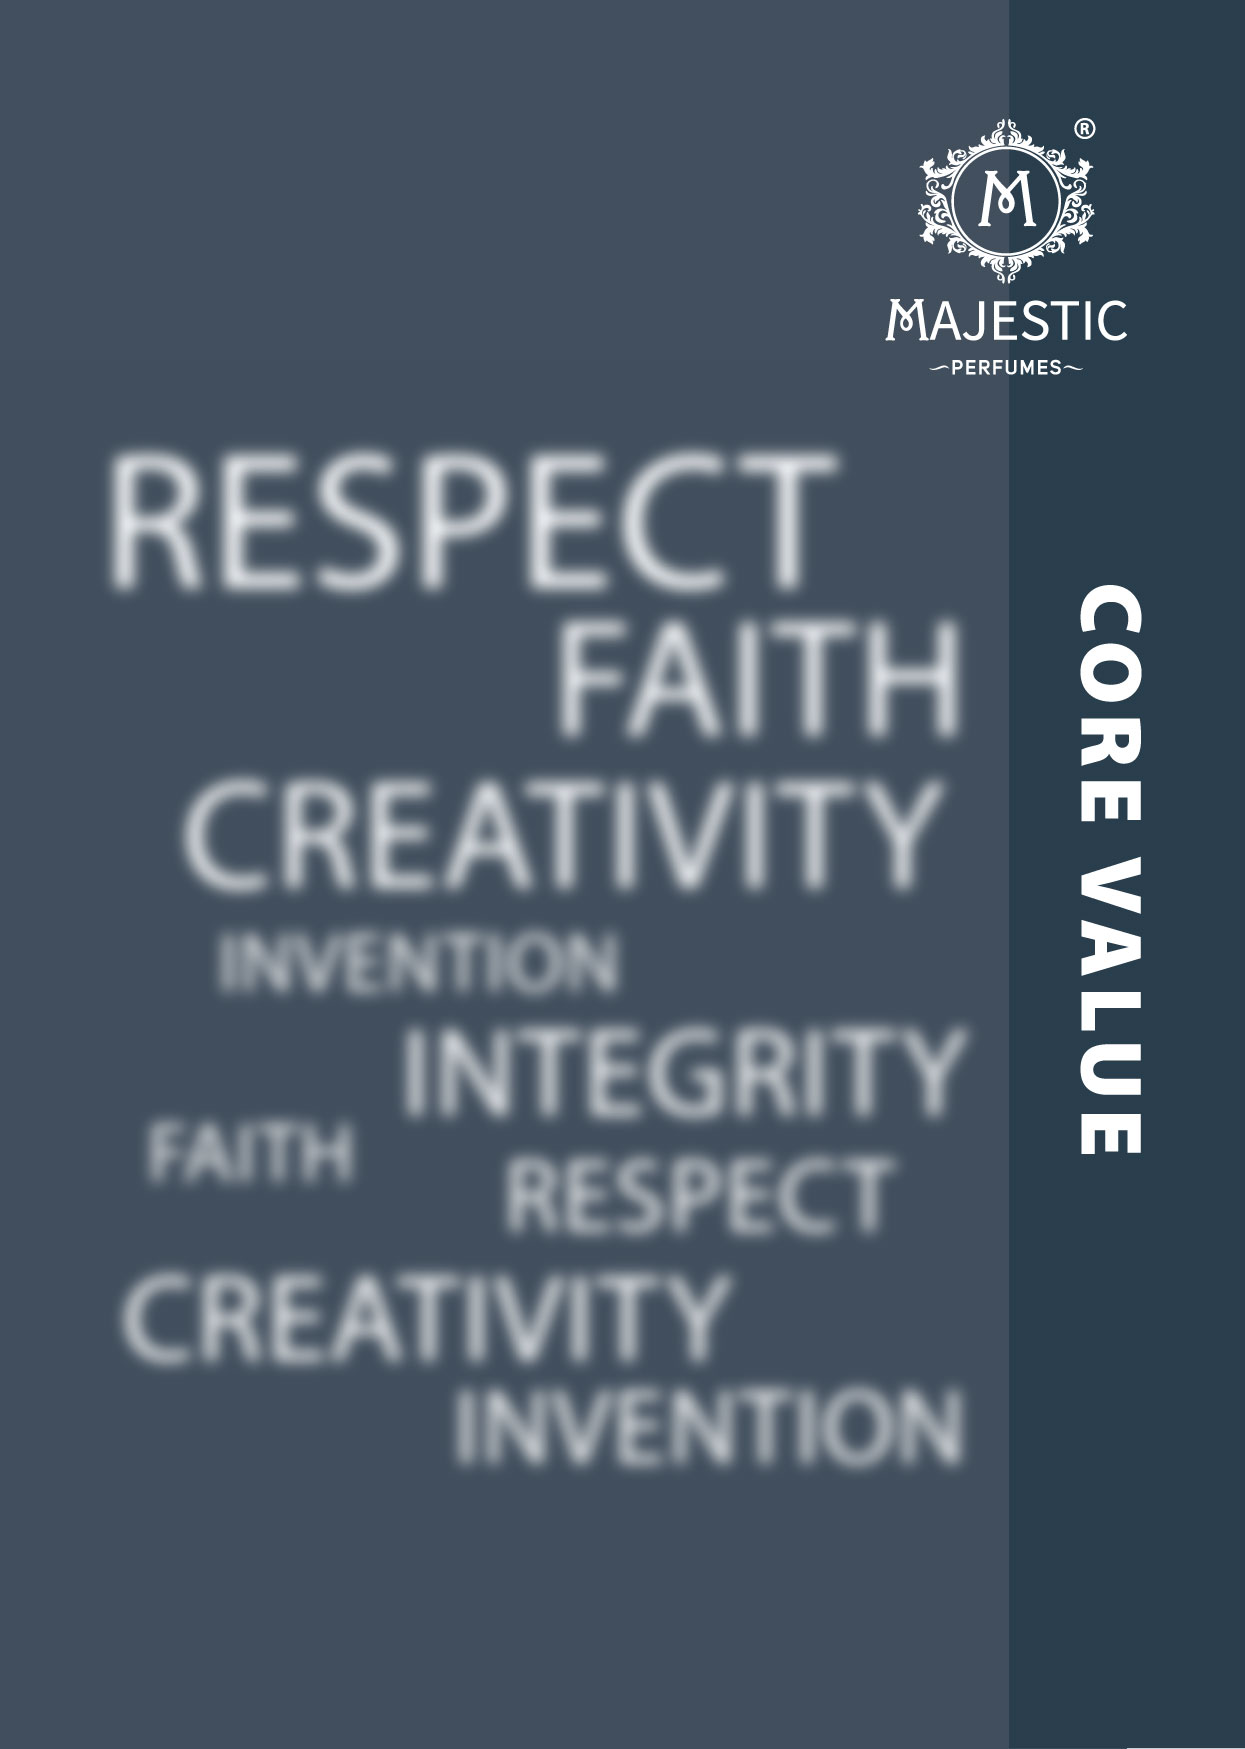 Majestic Core Values